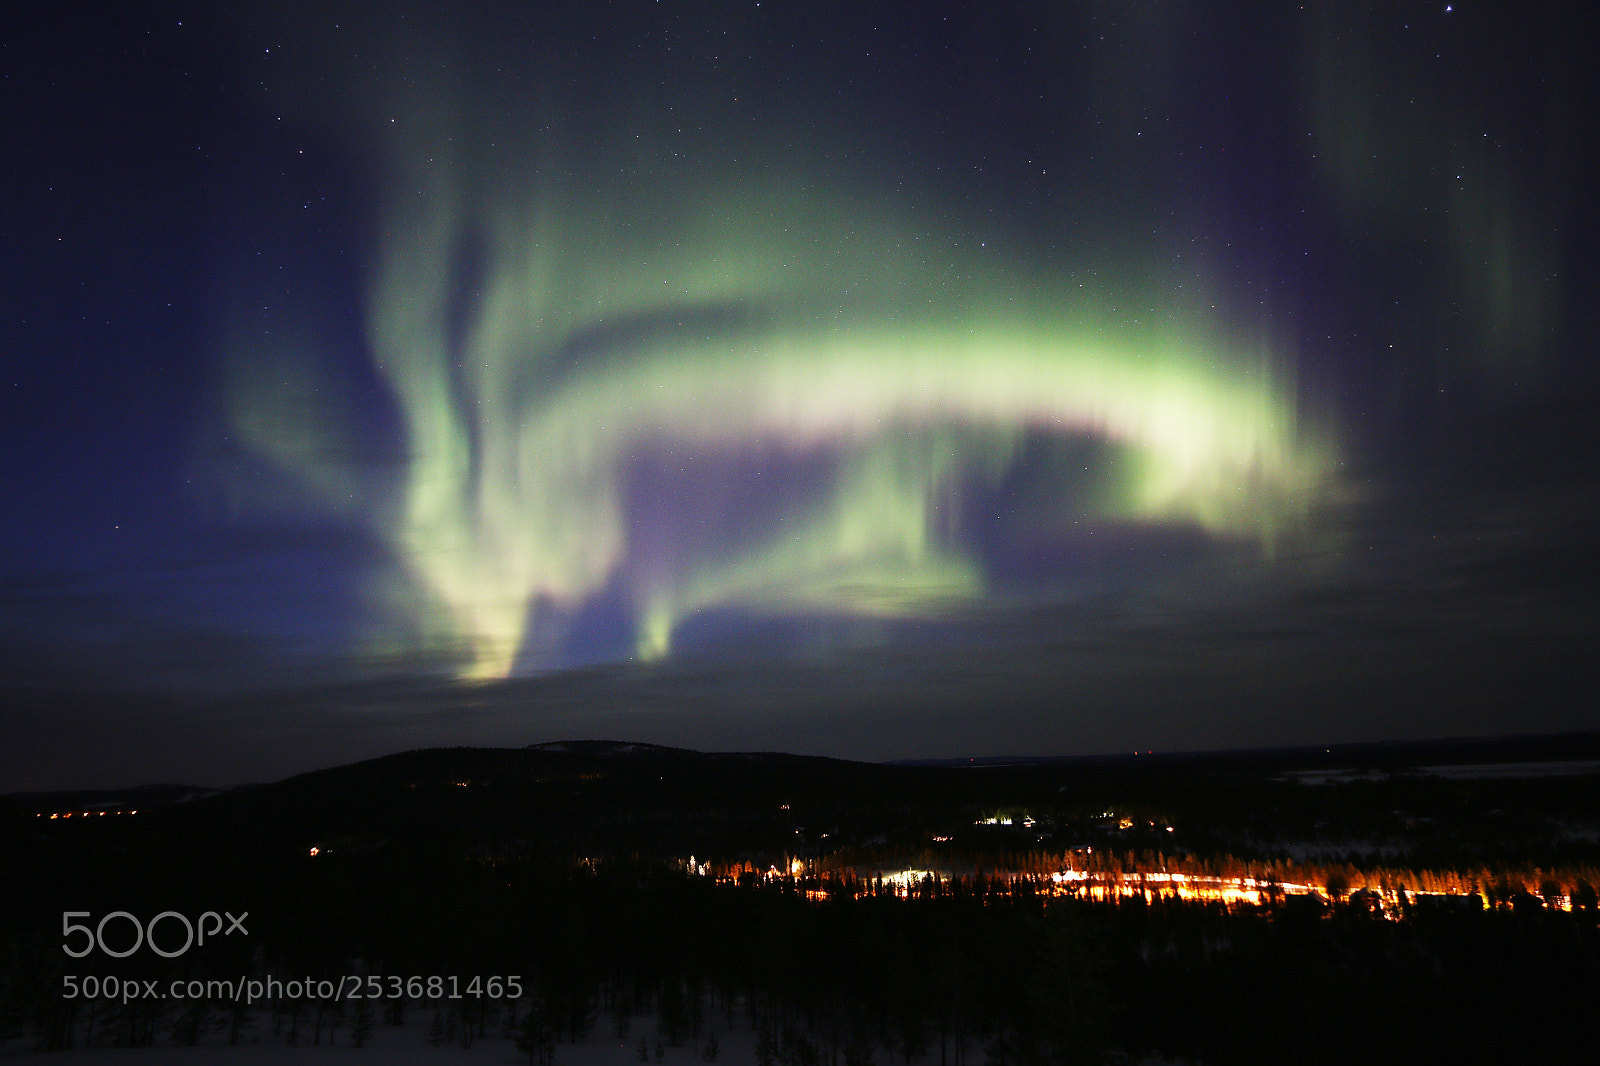 Canon EOS 70D sample photo. Aurora boreal photography